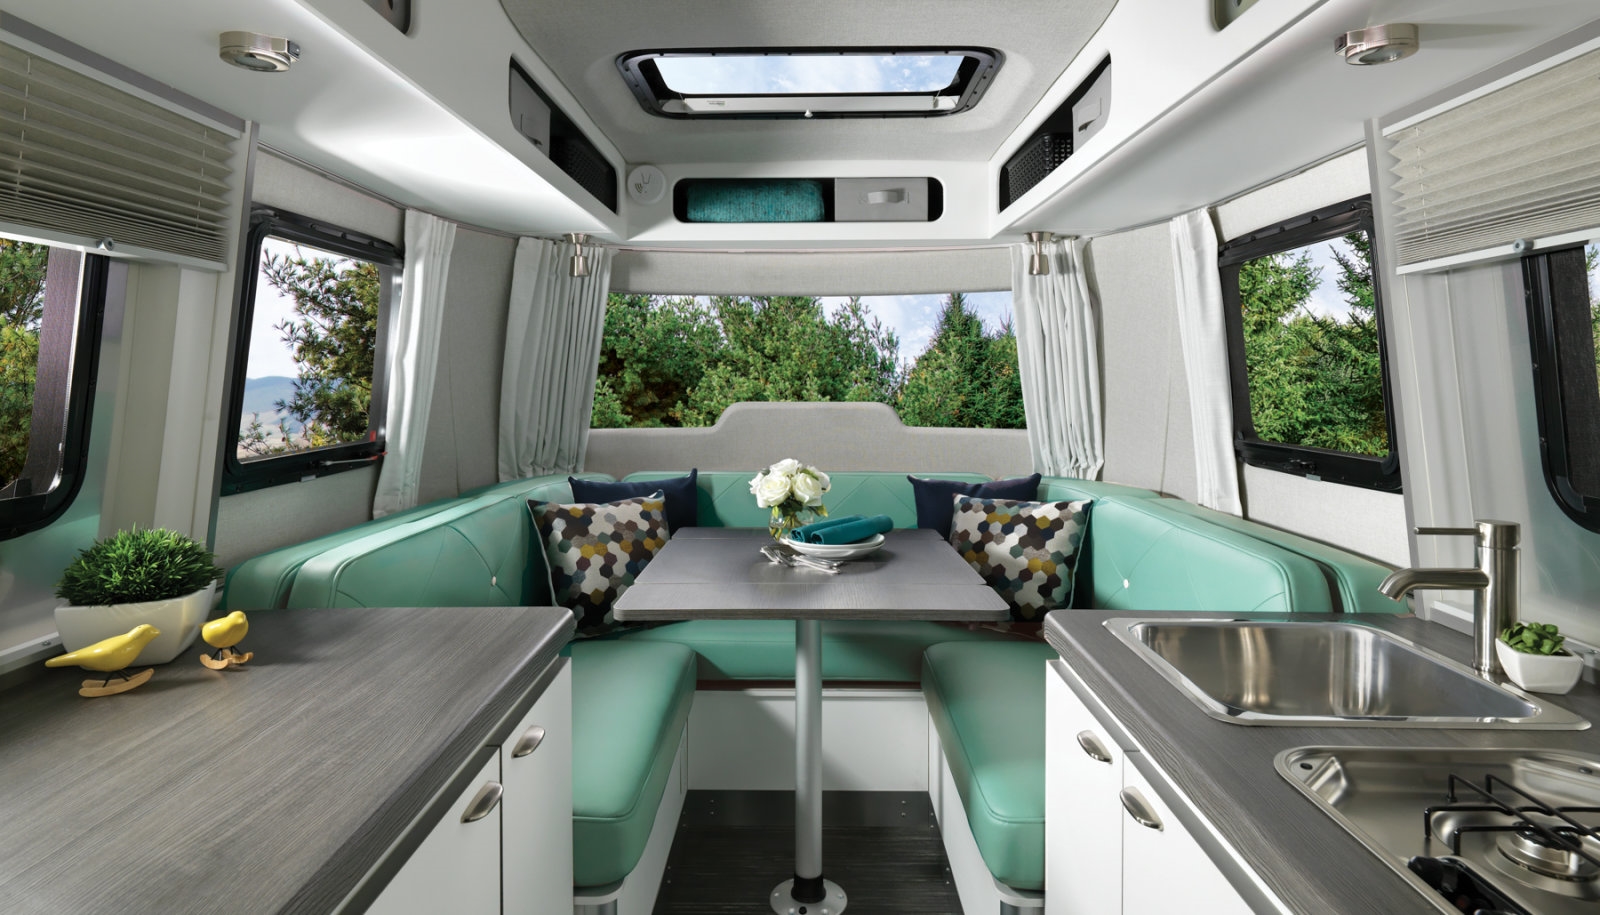 Airstream’s Nest is a cozy, futuristic trailer | DeviceDaily.com